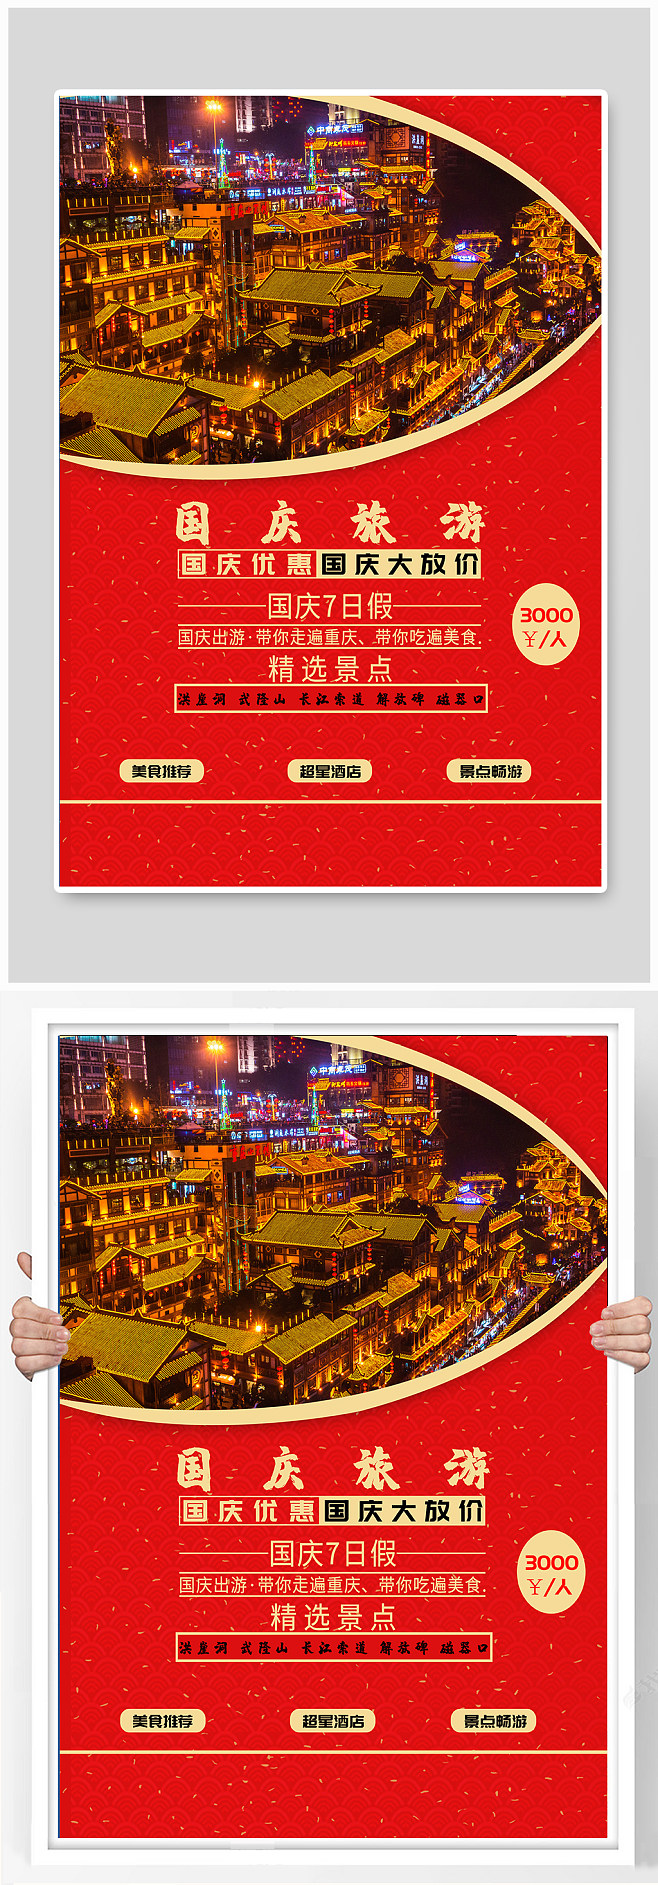 国庆节旅游宣传海报